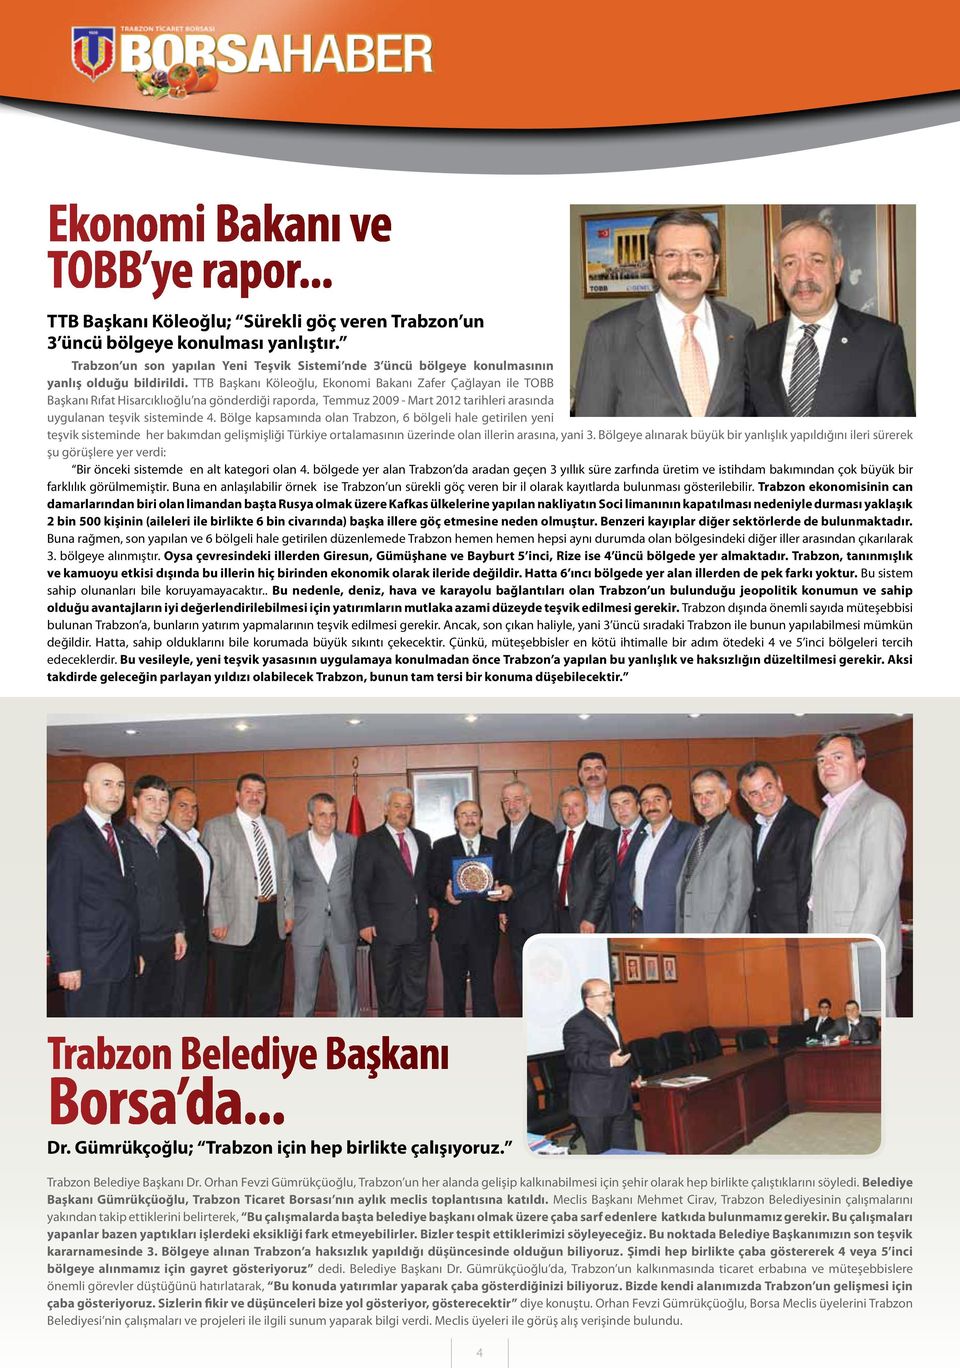 TTB Başkanı Köleoğlu, Ekonomi Bakanı Zafer Çağlayan ile TOBB Başkanı Rıfat Hisarcıklıoğlu na gönderdiği raporda, Temmuz 2009 - Mart 2012 tarihleri arasında uygulanan teşvik sisteminde 4.